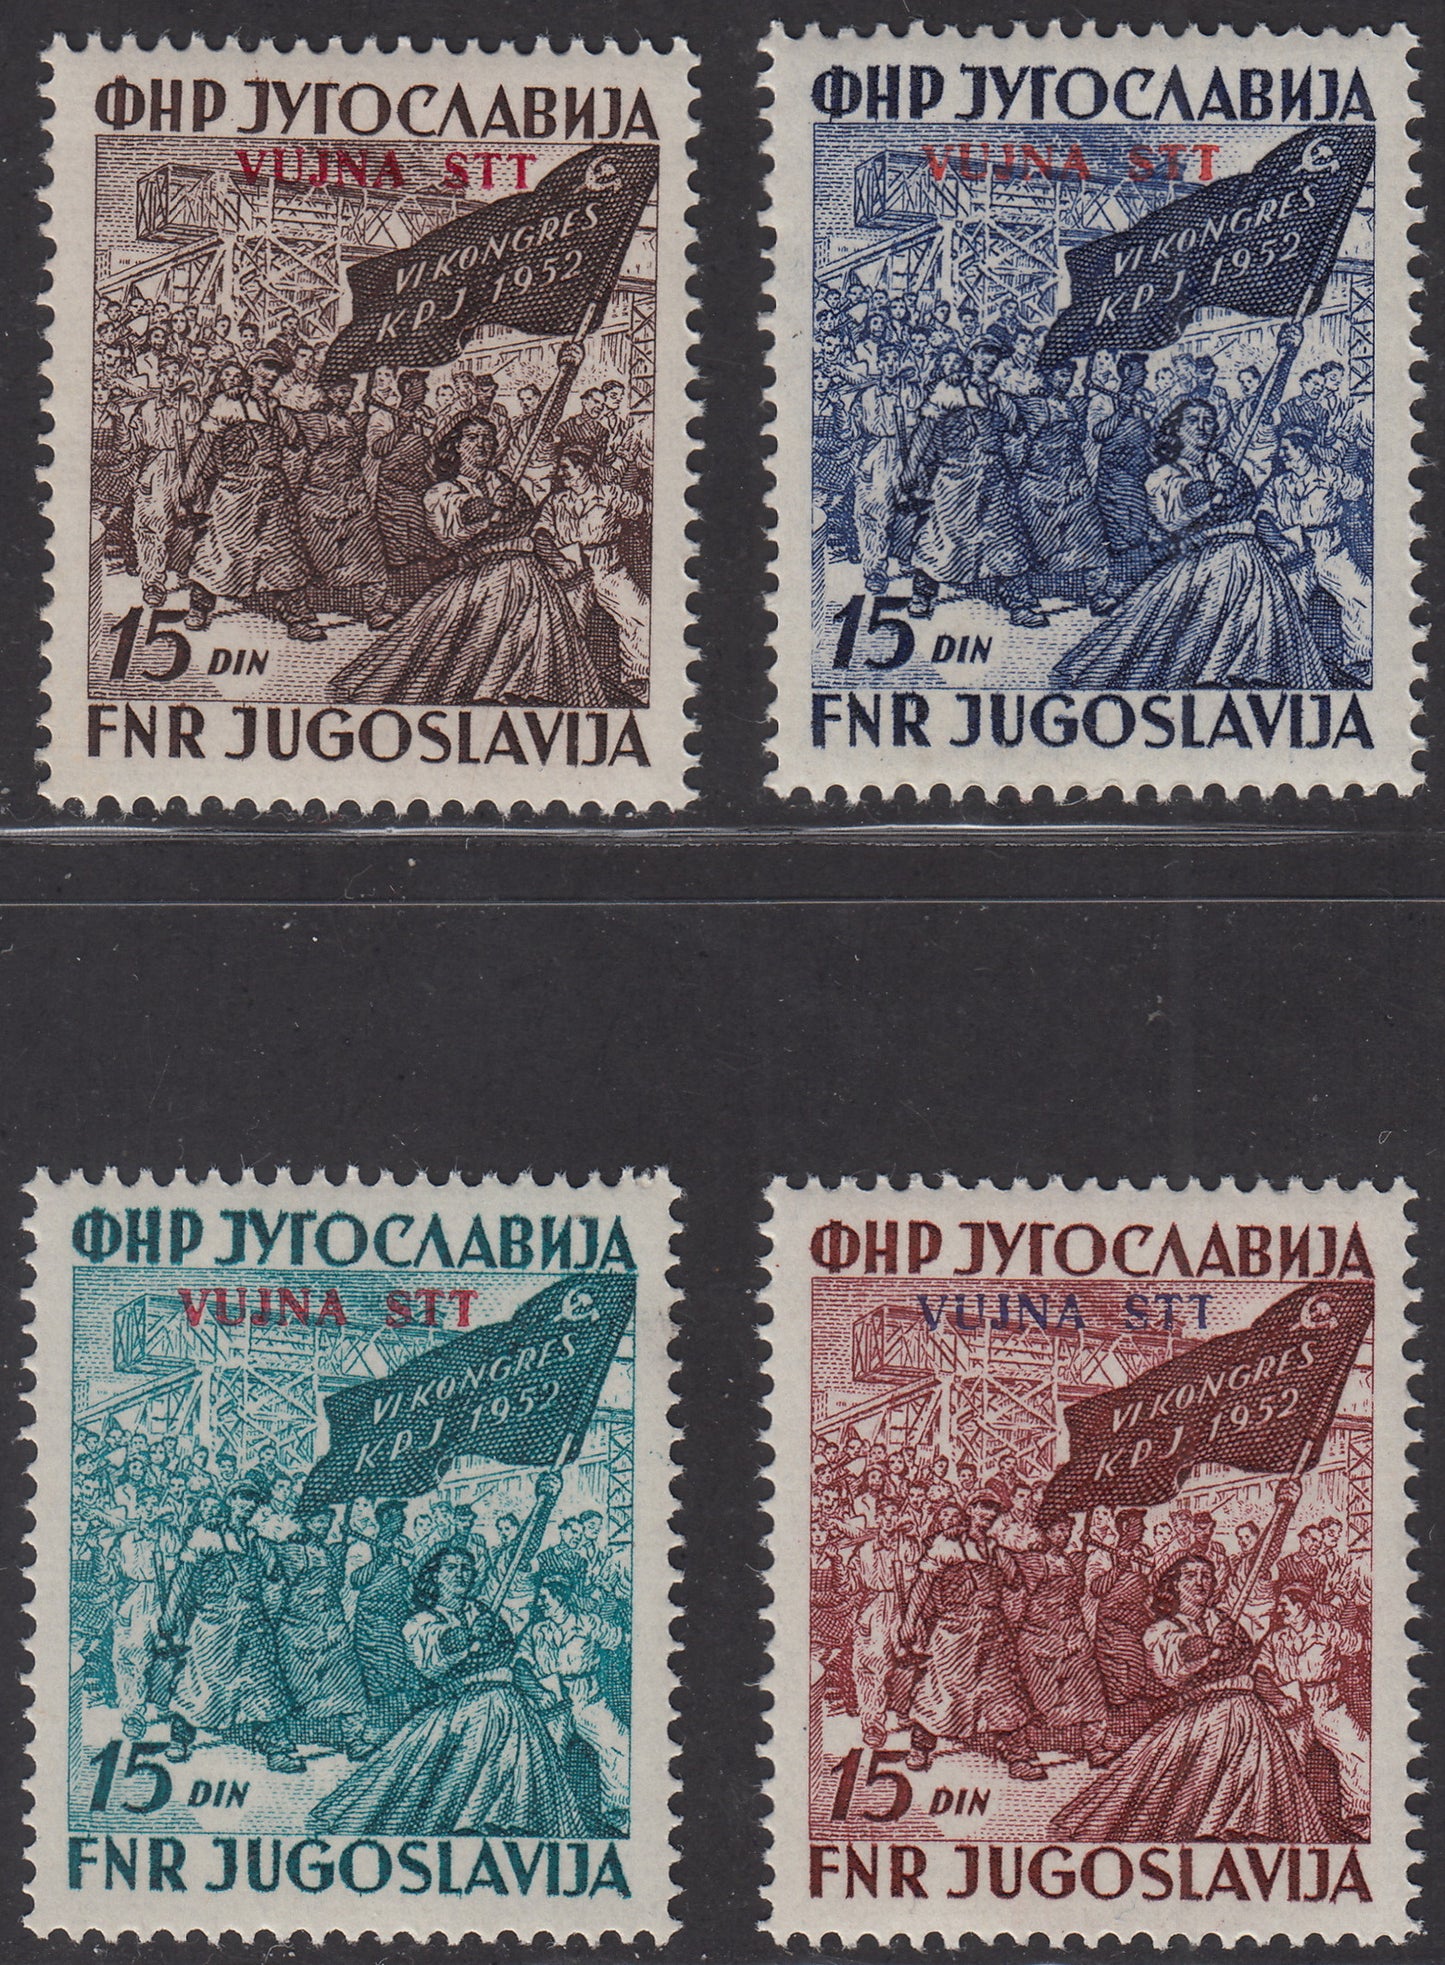 1952 - 6° congresso del Partito Comunista a Zagabria, serie completa di quattro valori nuova integra (67/70)